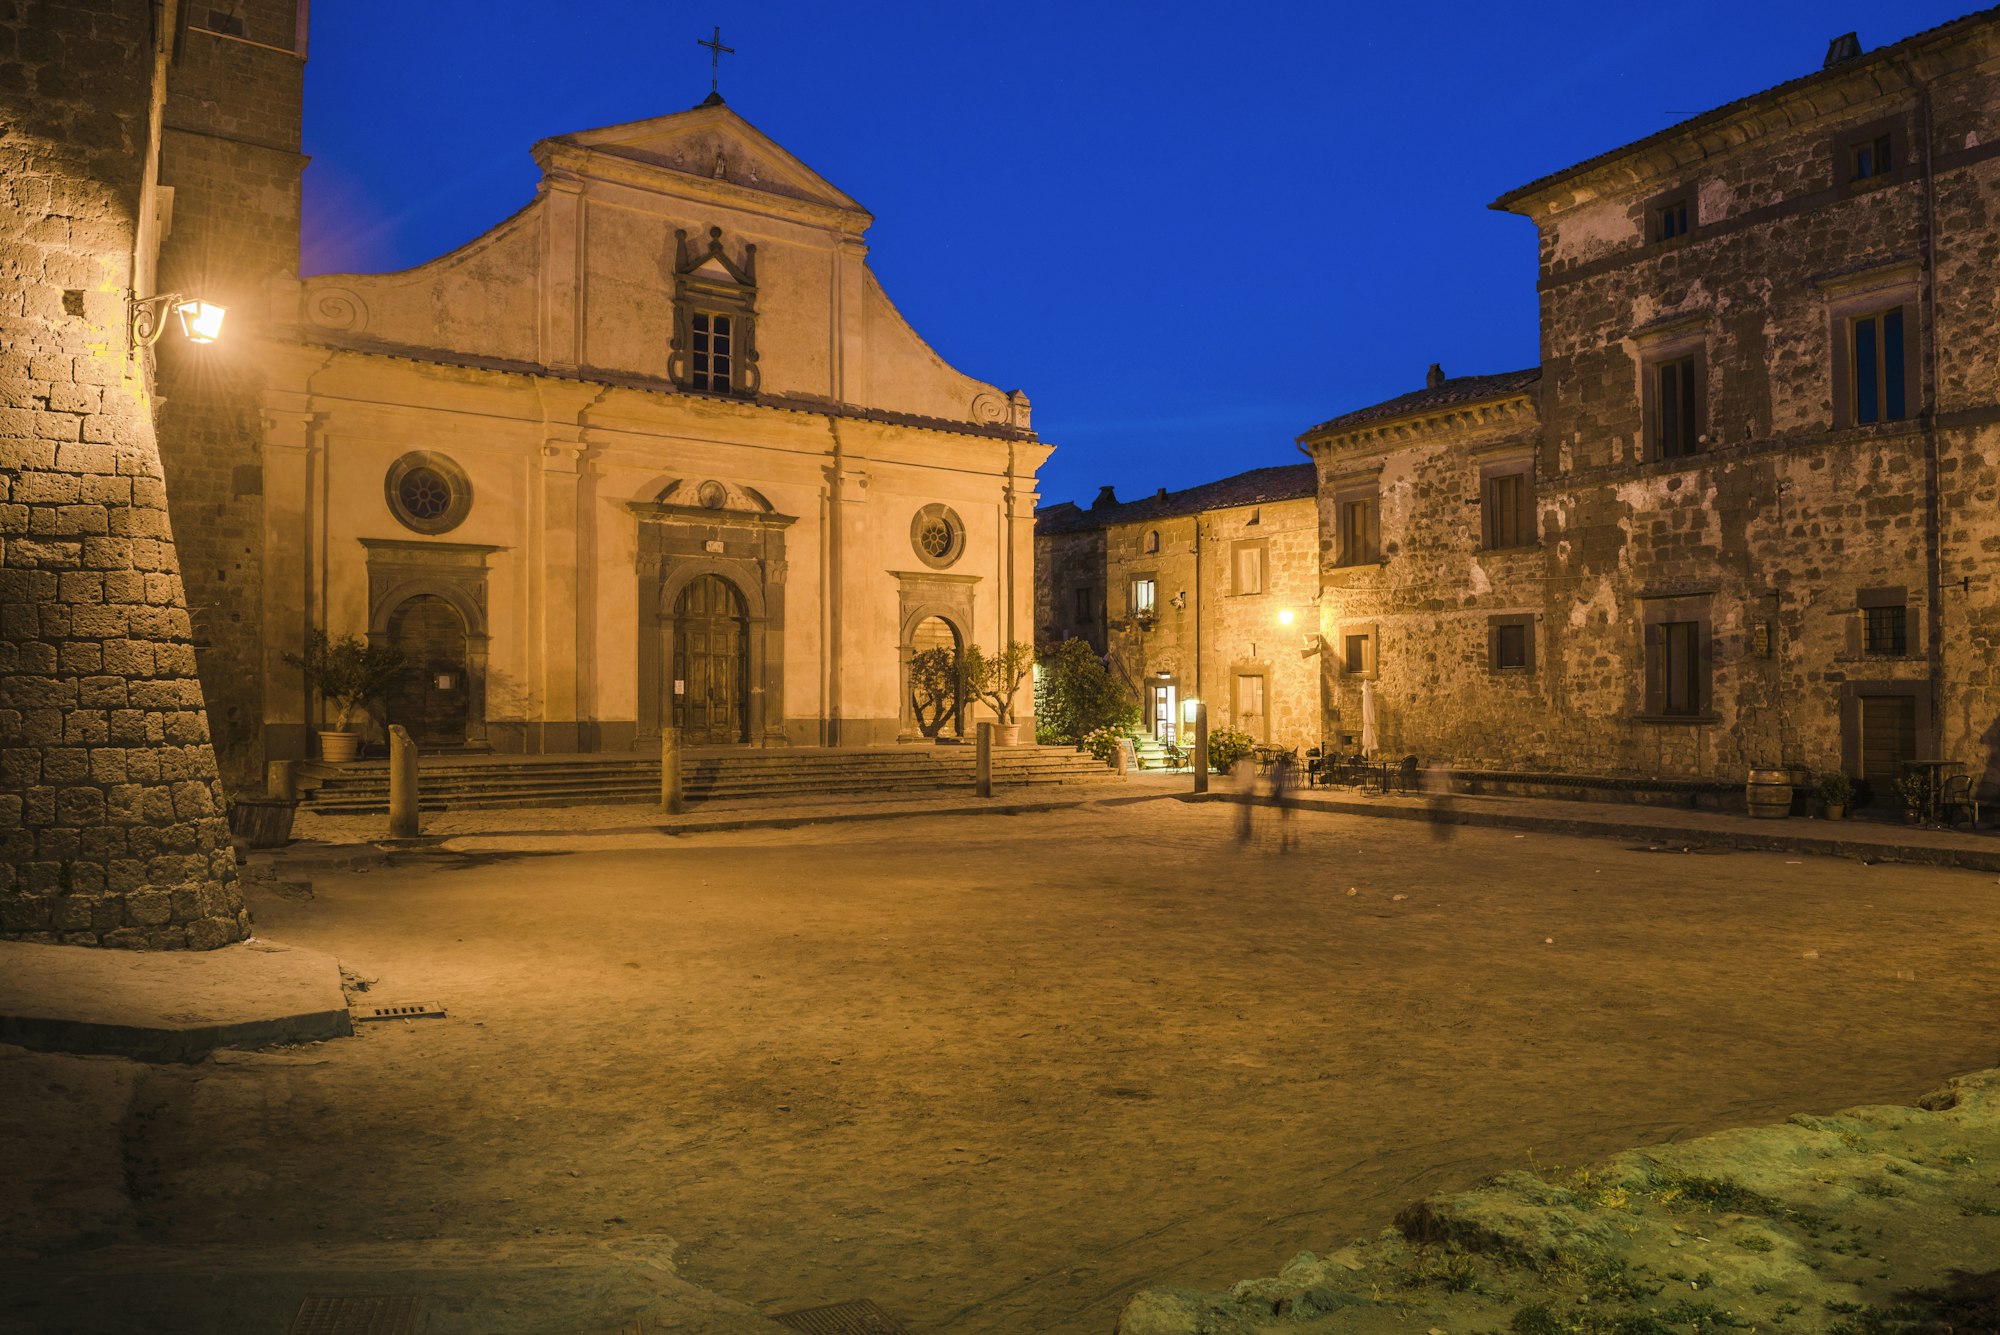 Civita di Bagnoregio at night, Province of Viterbo, Italy